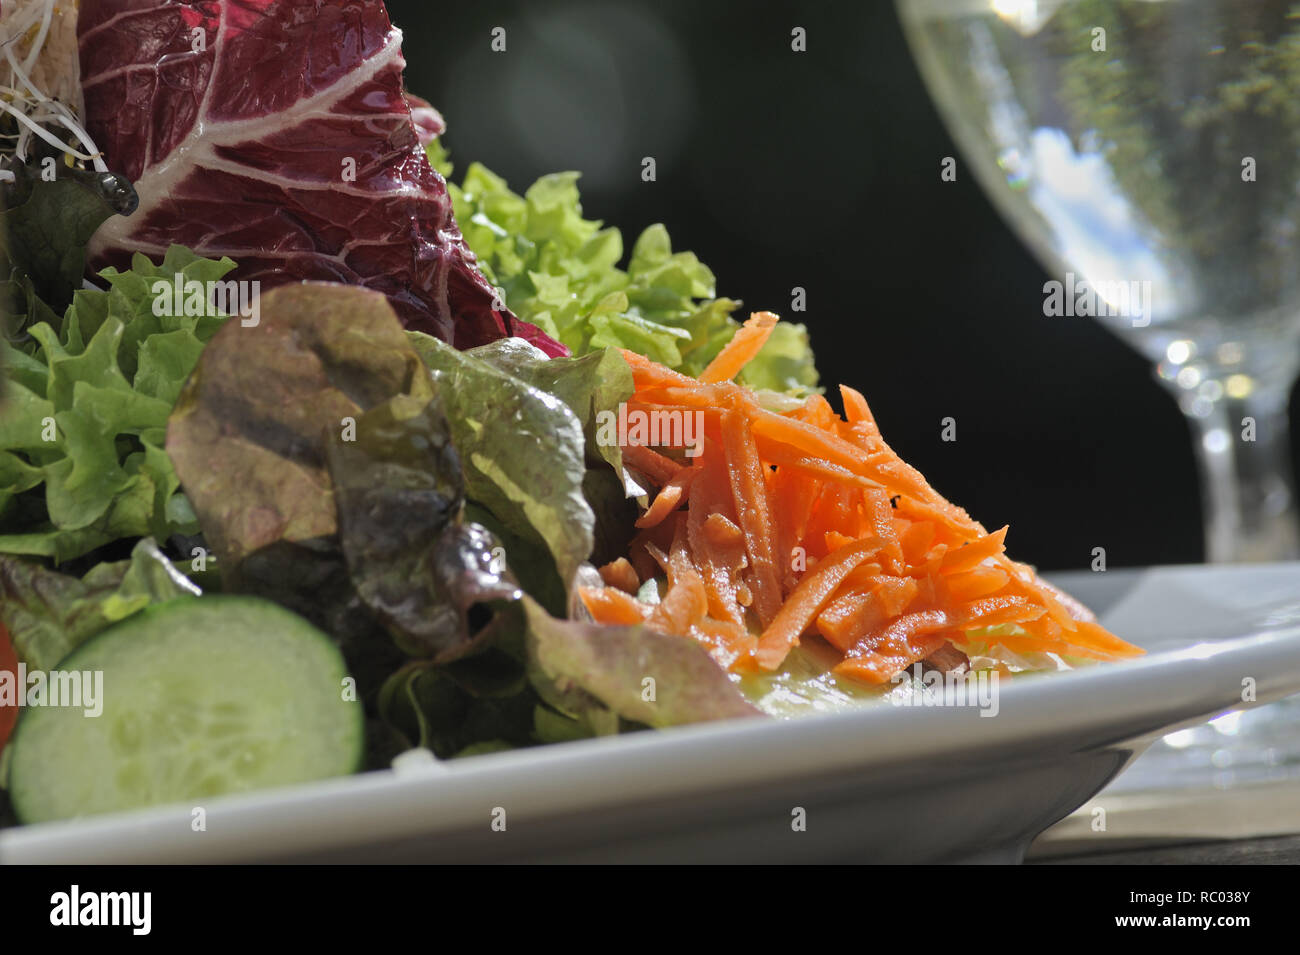 frischer Bunter Frühjahrssalat - frischer, farbenfrohter Salat Stockfoto